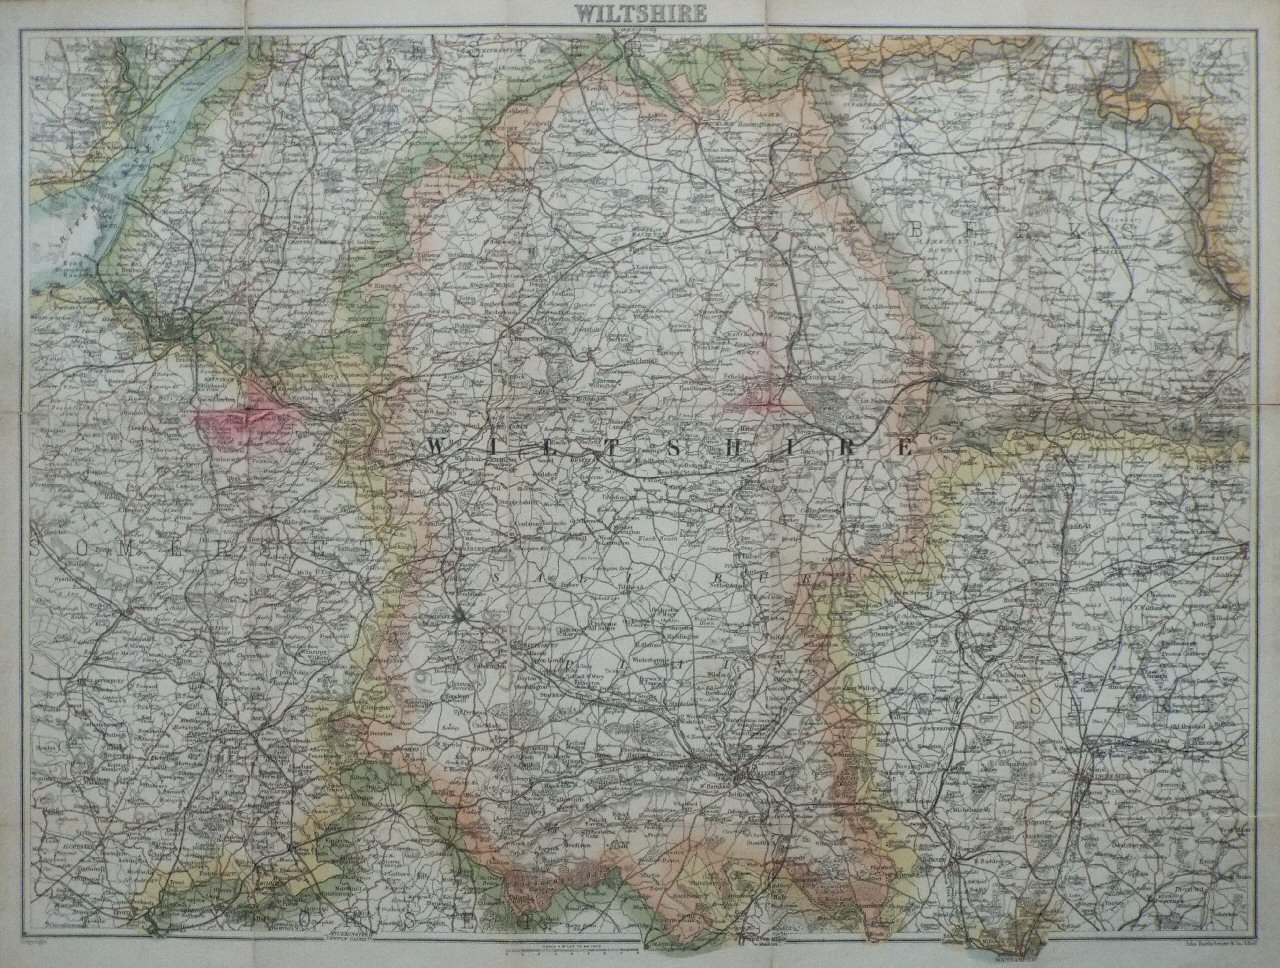 Map of Wiltshire - Bartholomew/WHSmith